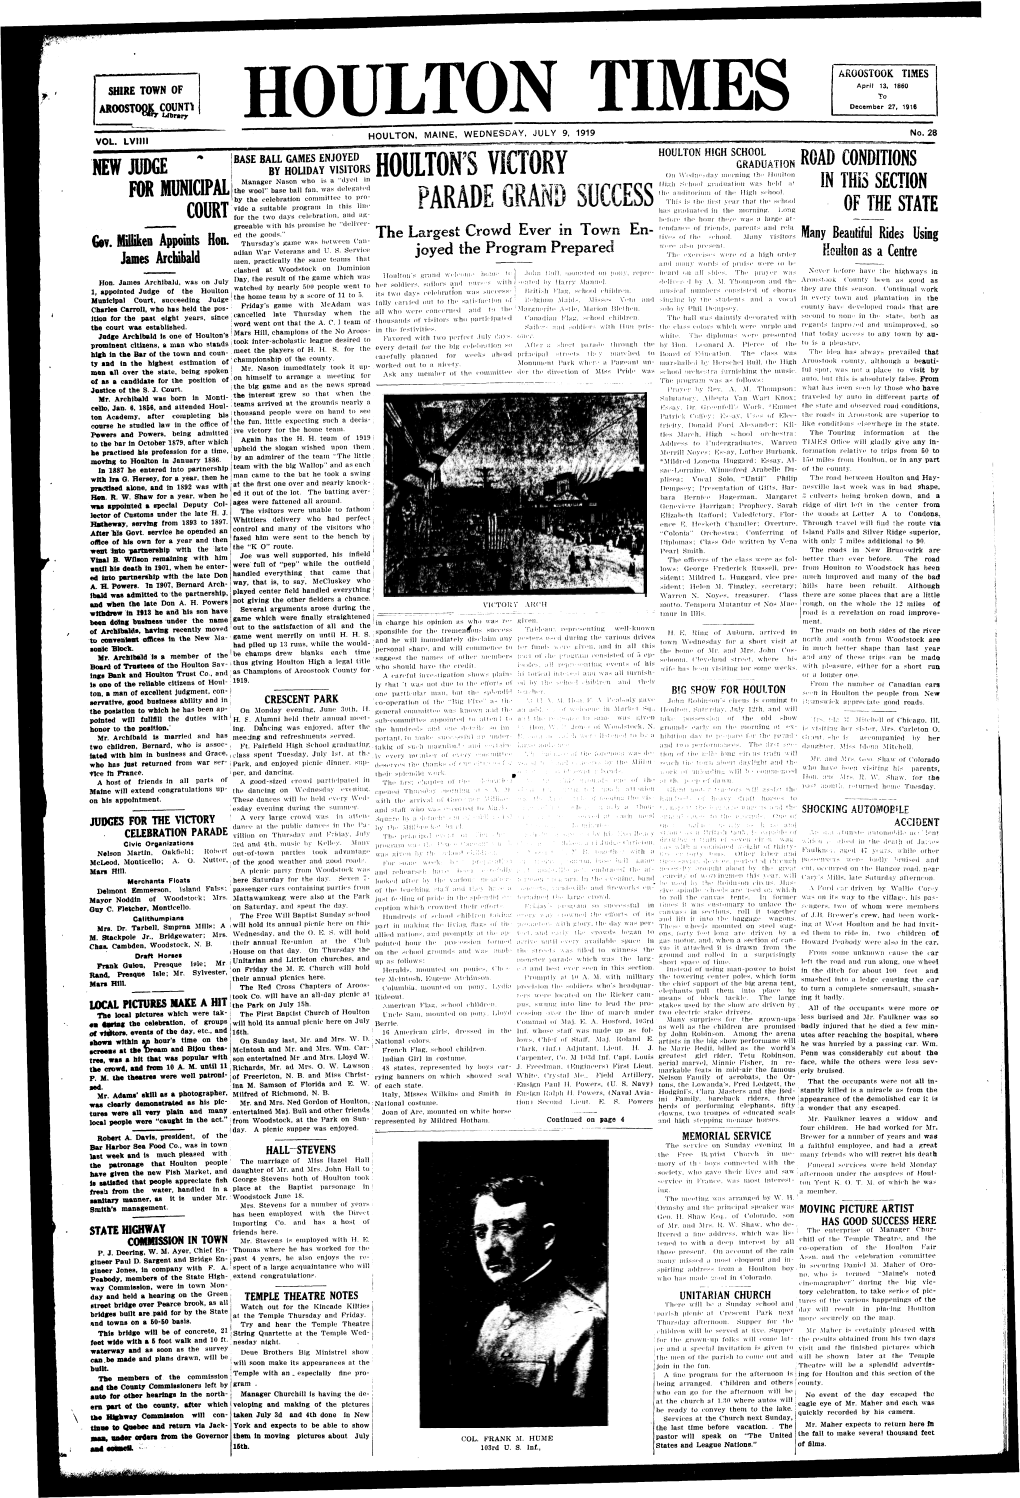 Houlton Times, July 9, 1919